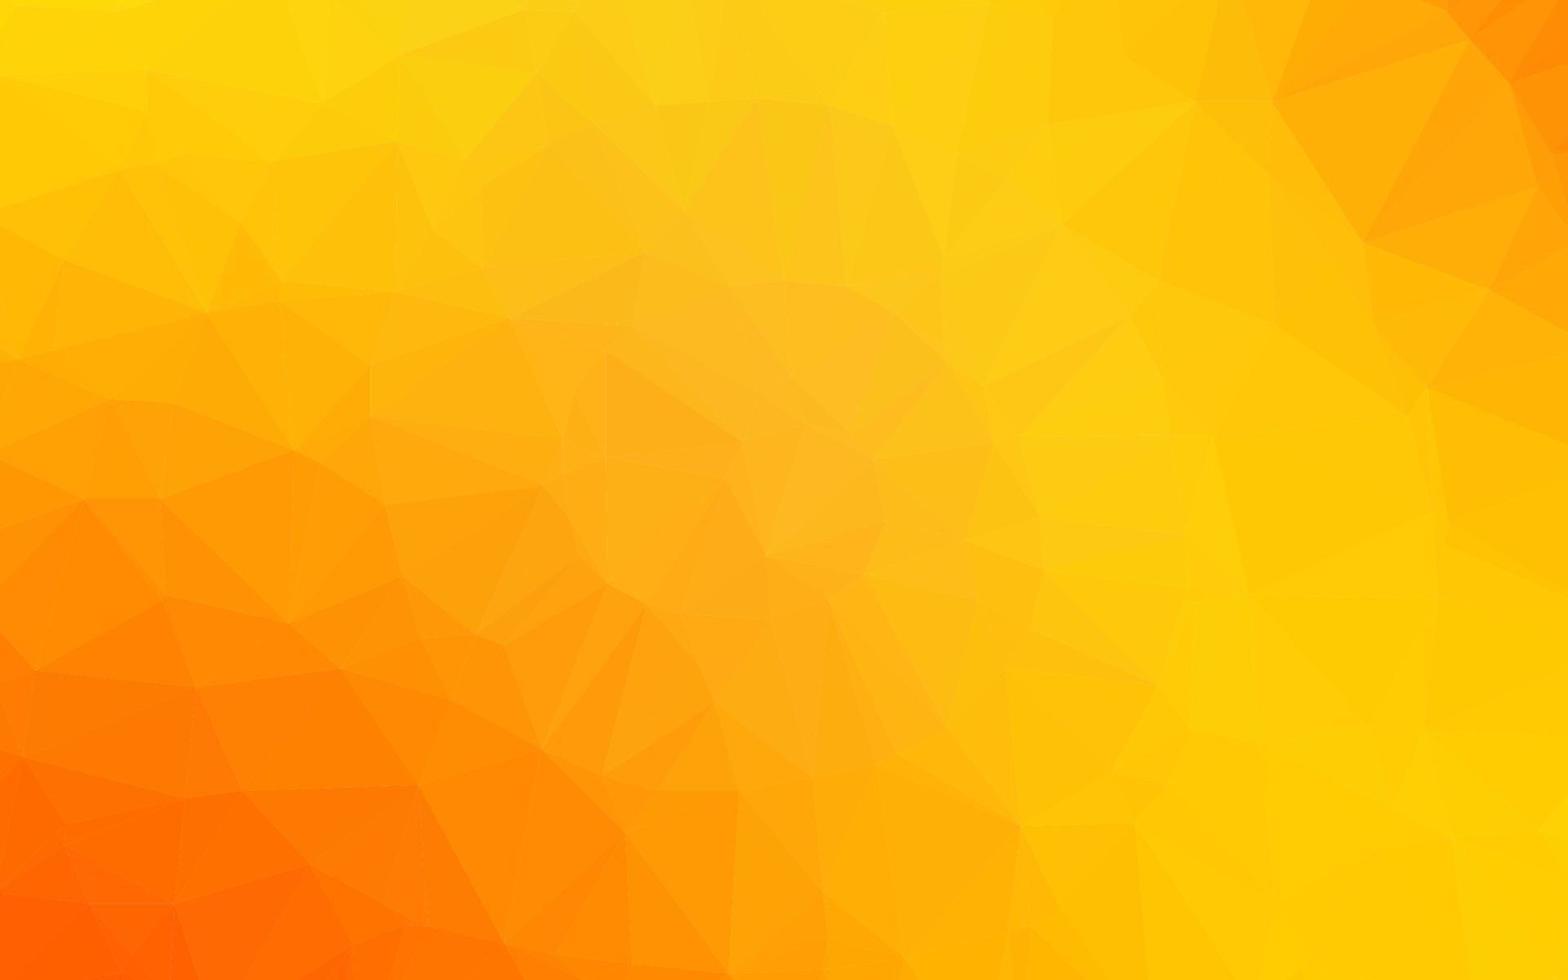 modello poligonale vettoriale giallo chiaro, arancione.